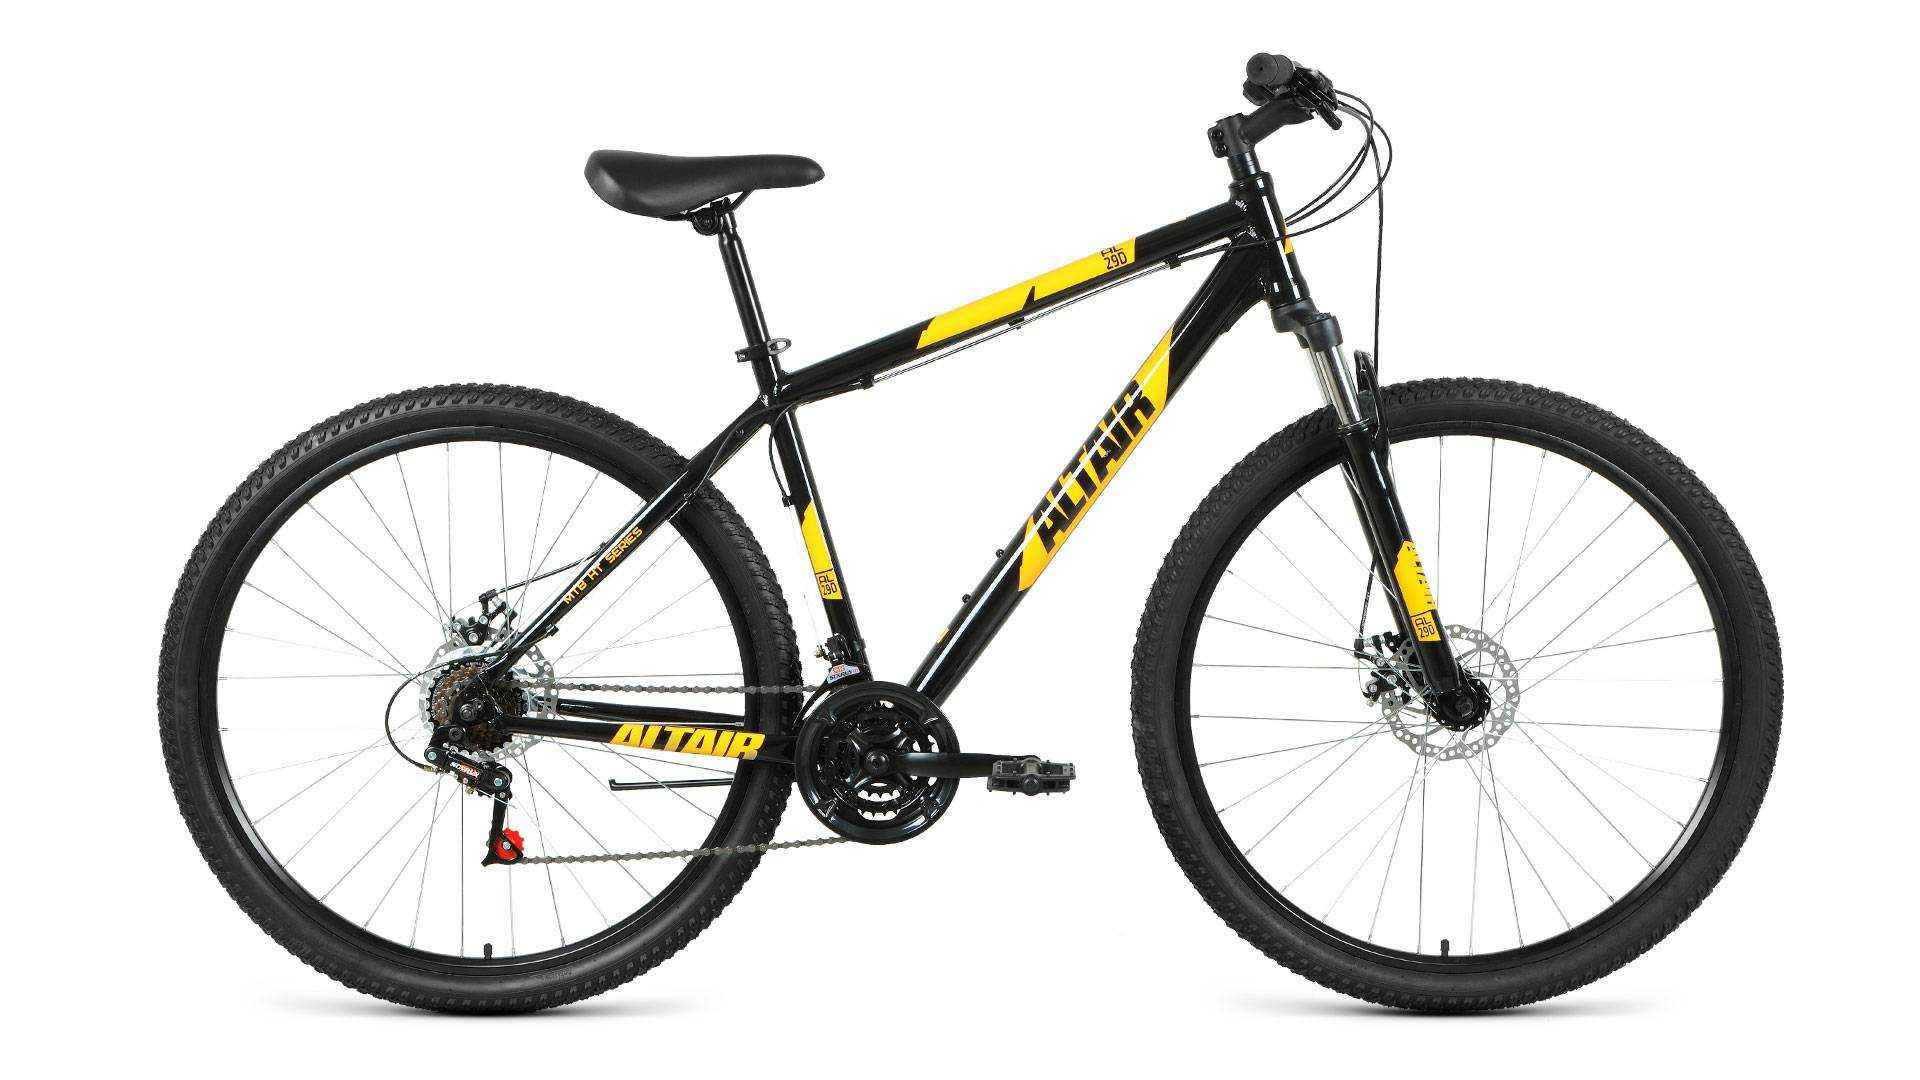 Велосипед Altair D 21 скорость, ростовка 19, чёрный, оранжевый, 29